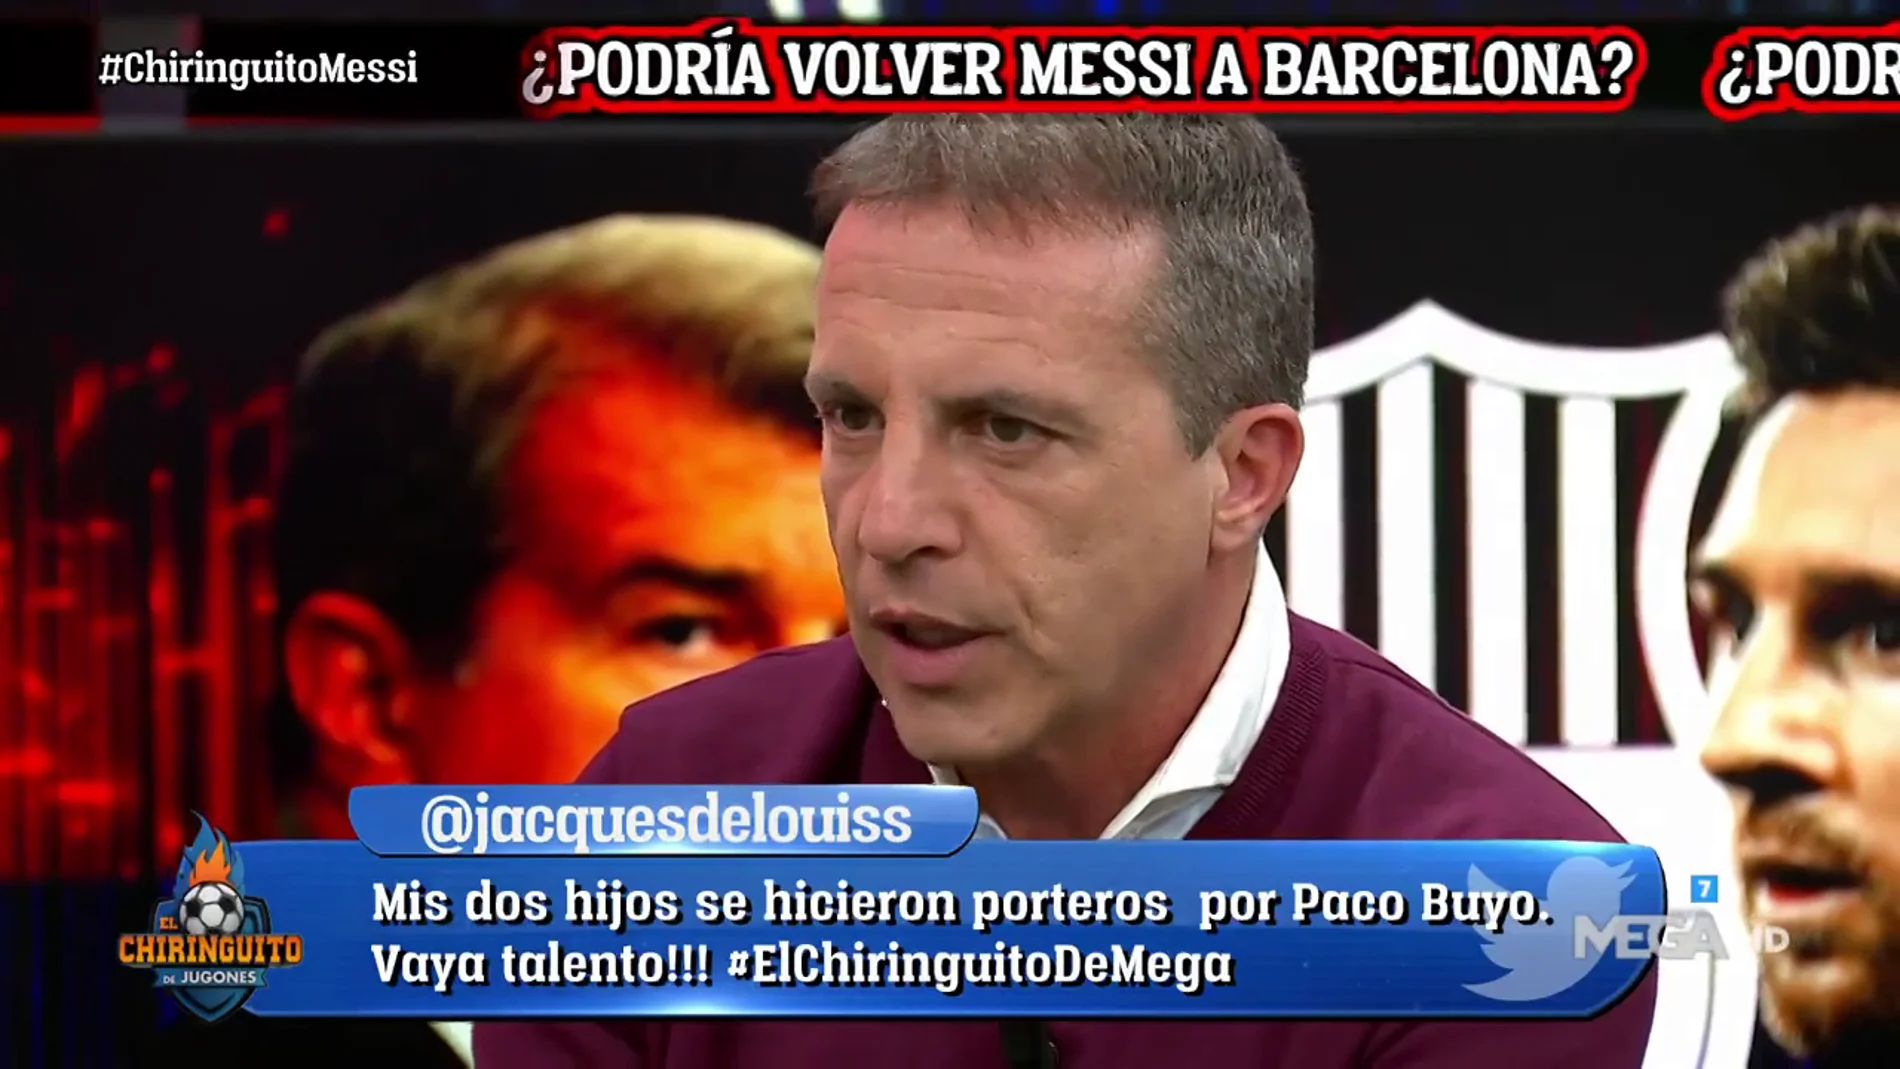 Cristóbal Soria: "Me encantaría, pero me temo que Messi no volverá al Barça"